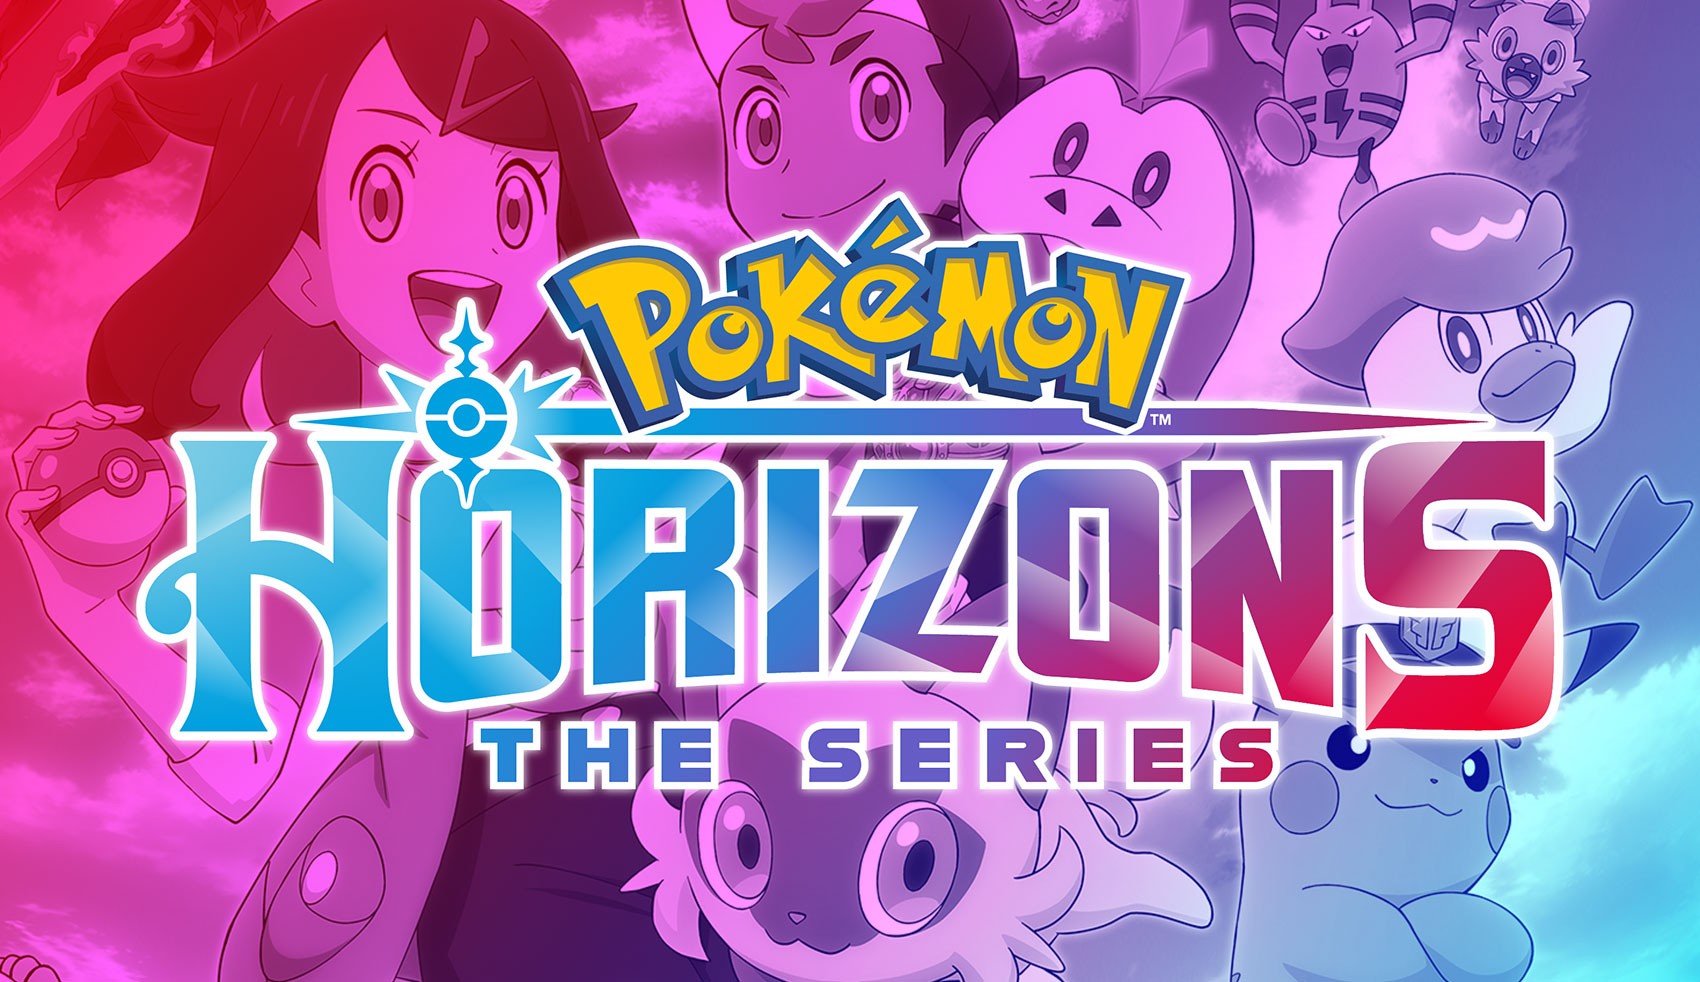 Novos episódios de Pokémon Evolutions a partir de 2 de Dezembro